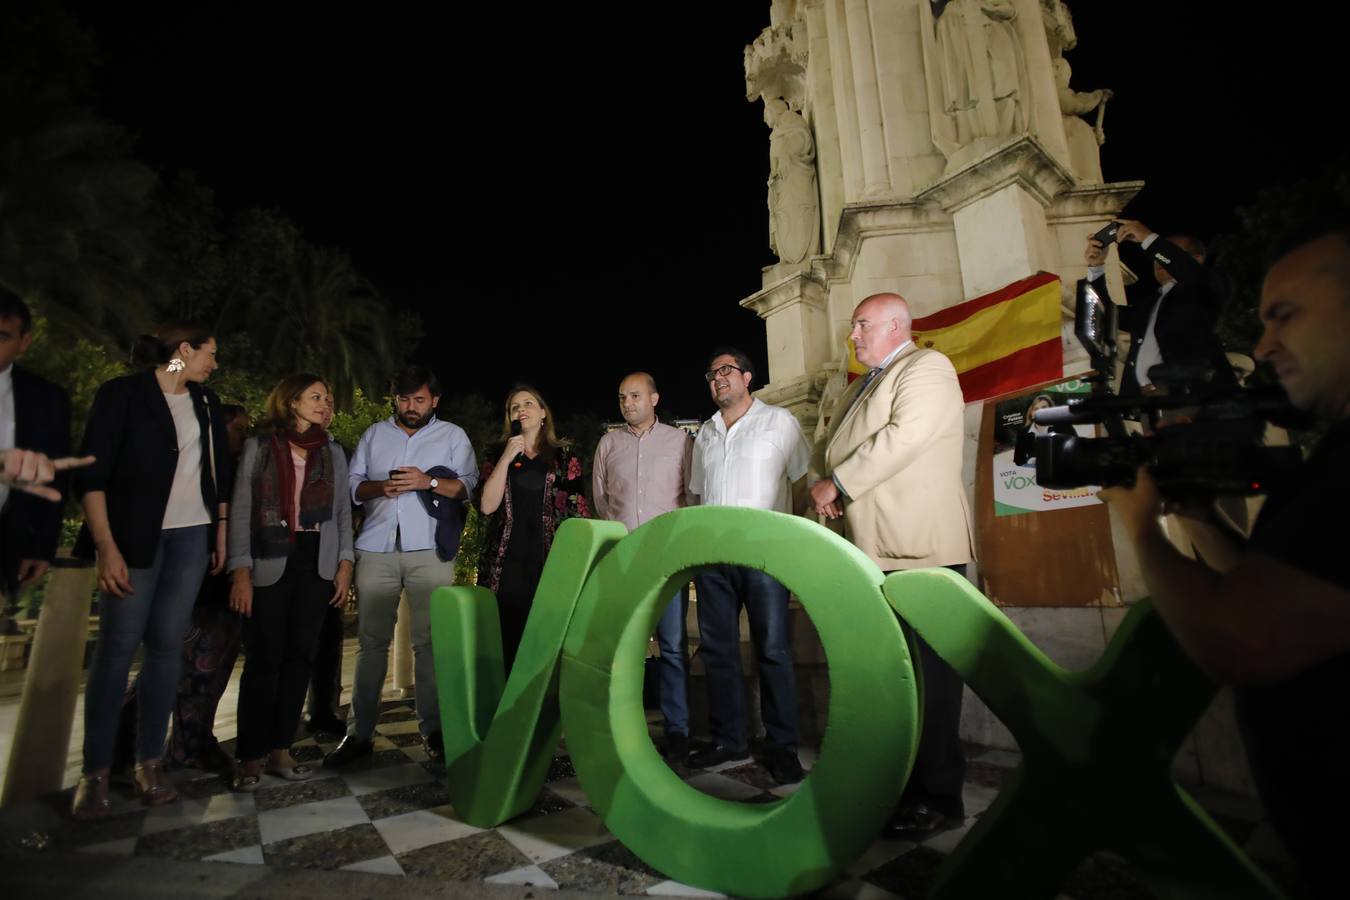 El inicio de la campaña para las elecciones municipales en Sevilla 2019, en imágenes